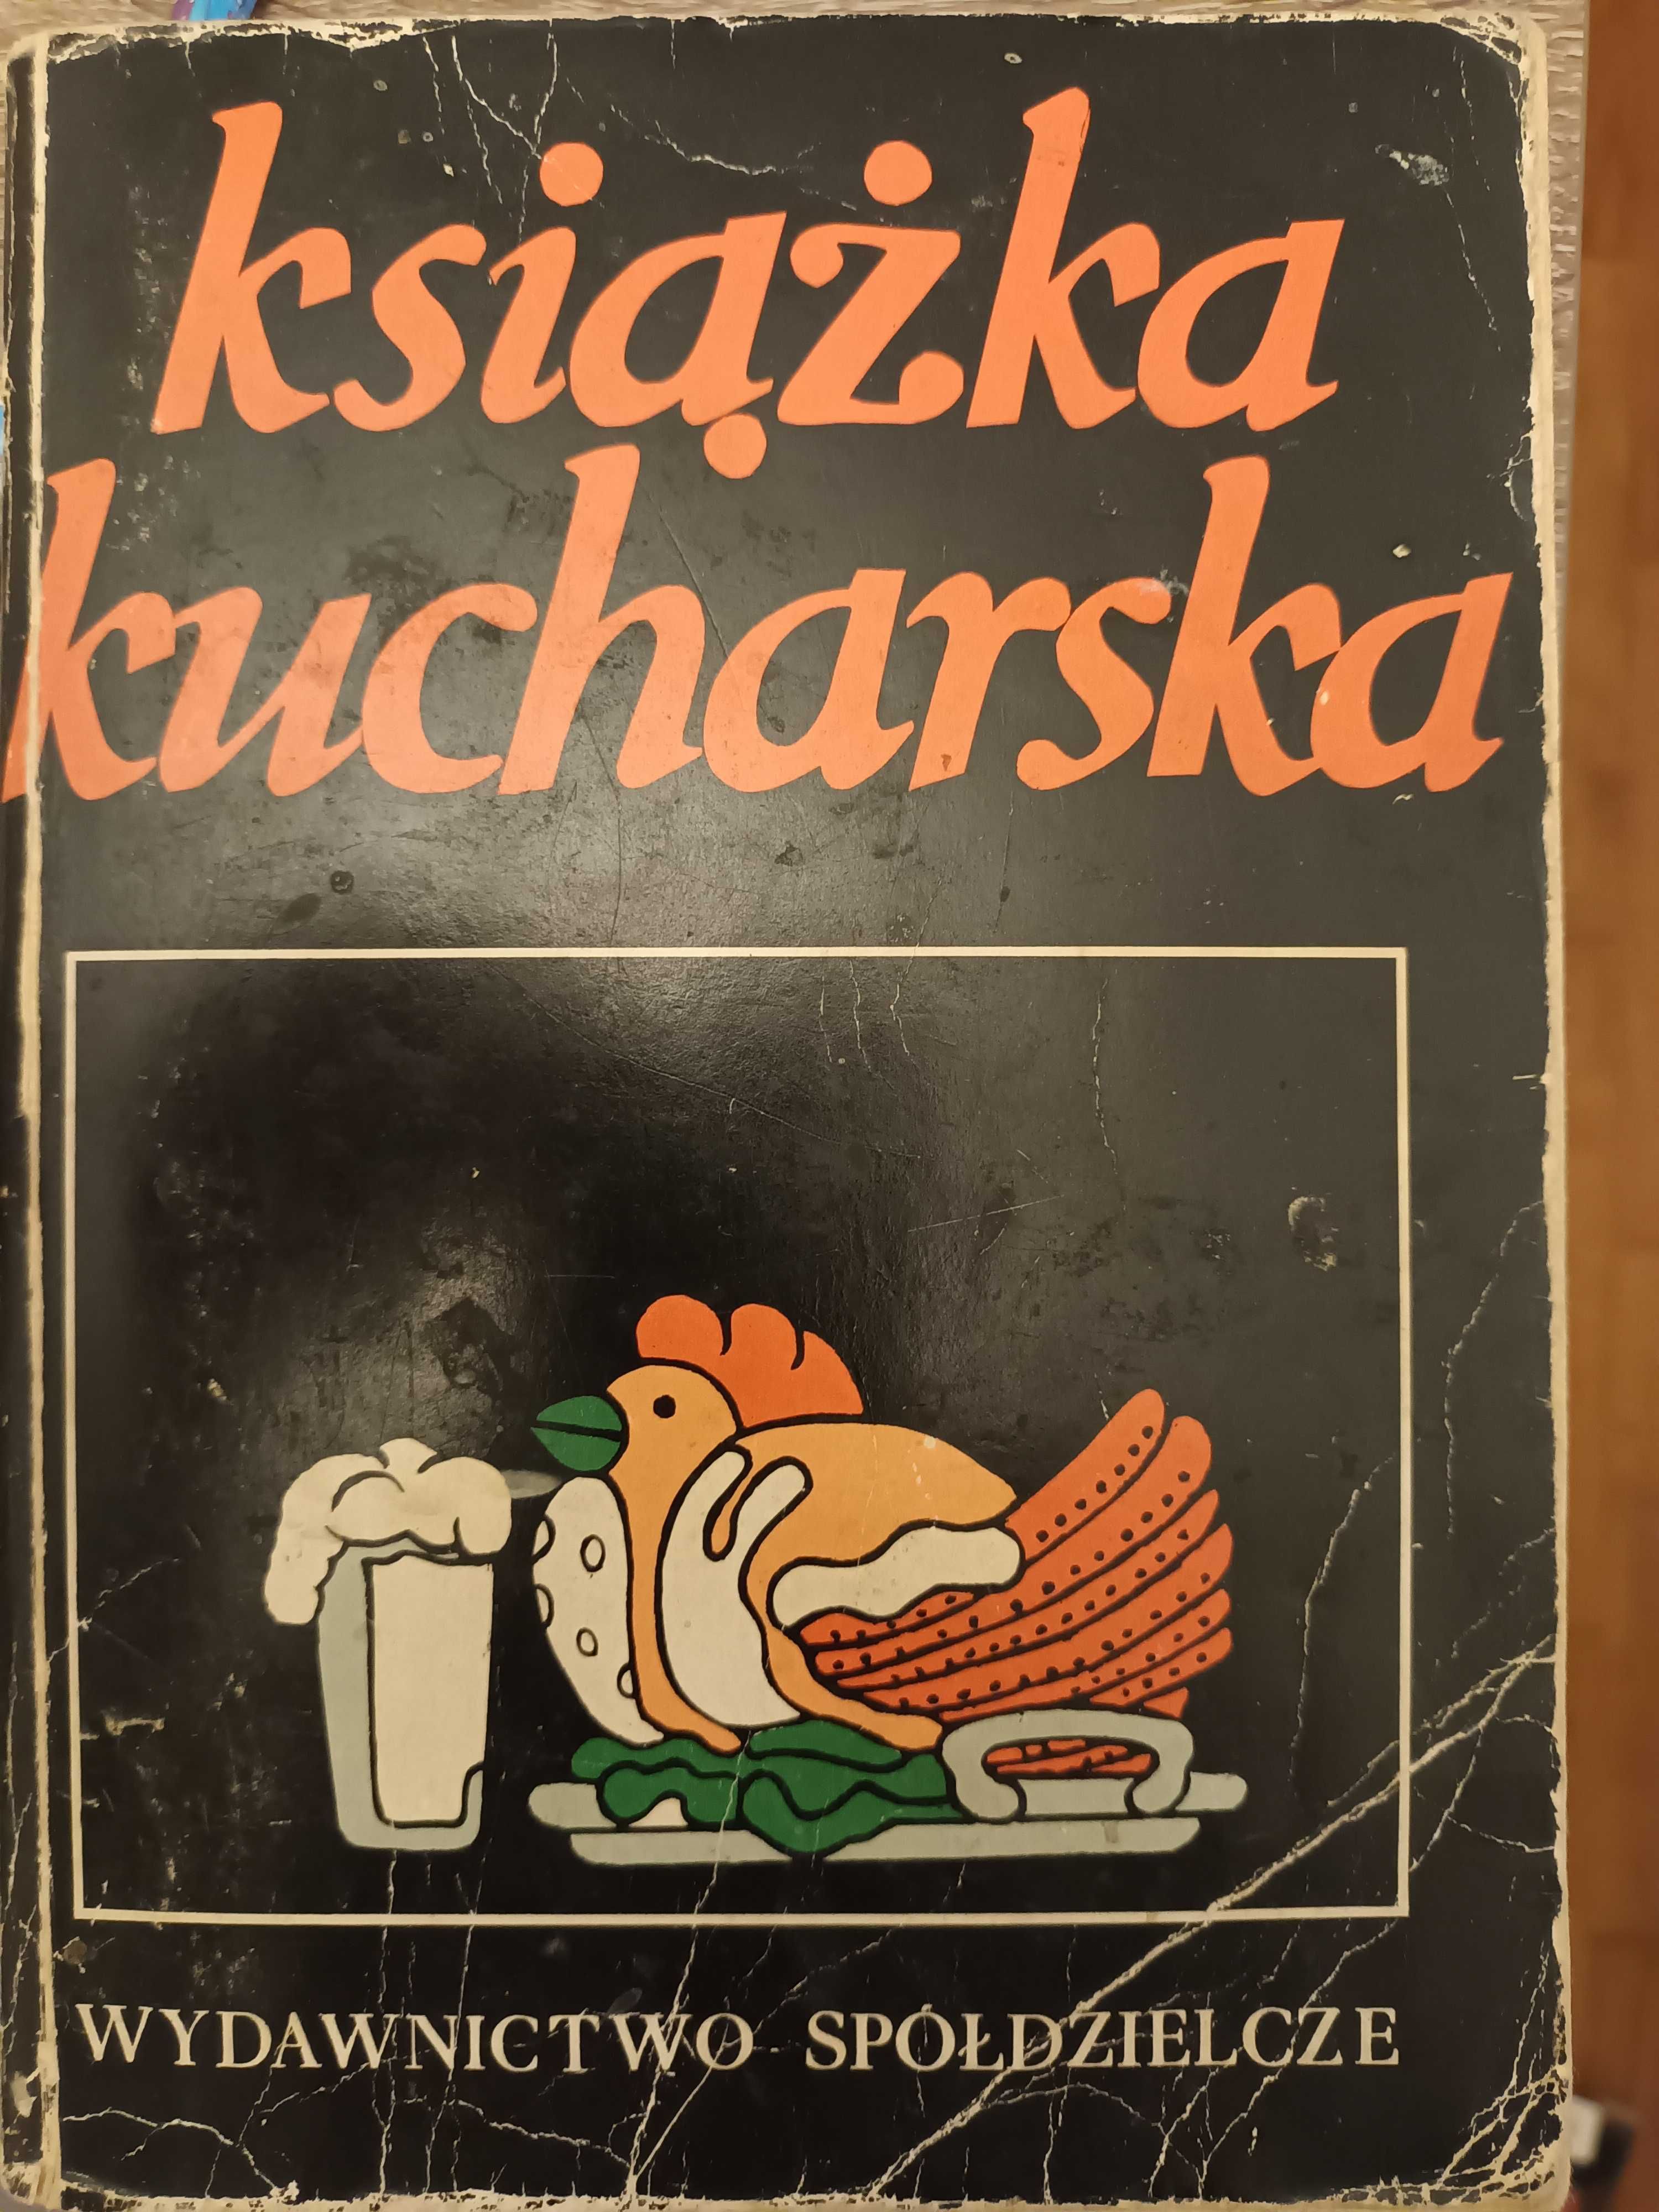 Łukasiak Książka kucharska,10ZŁ